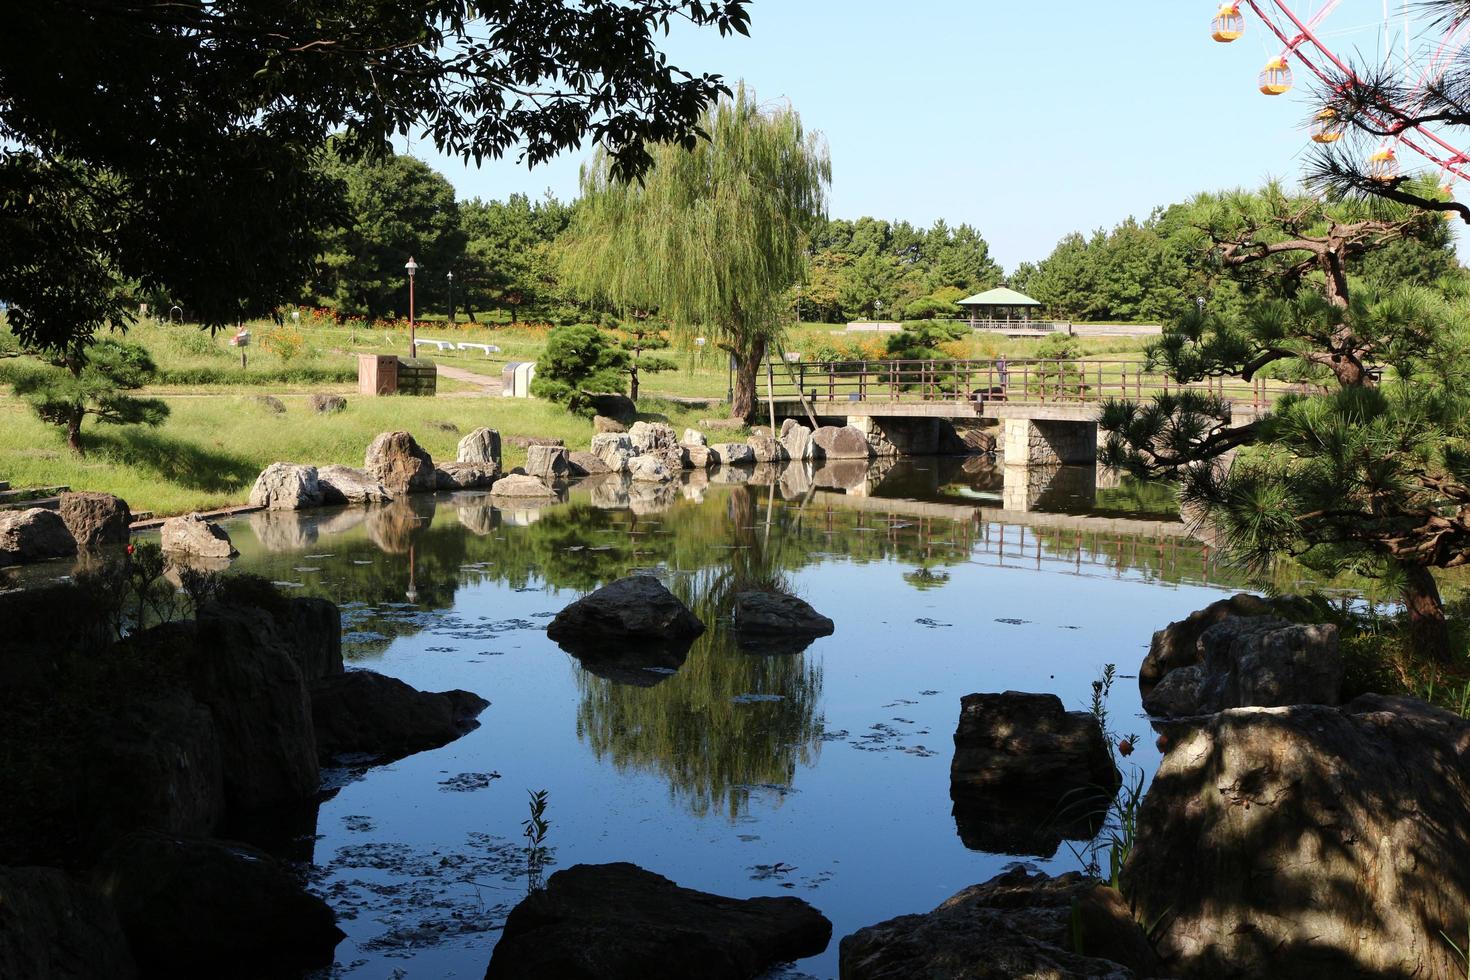 giardino in stile giapponese al parco foto